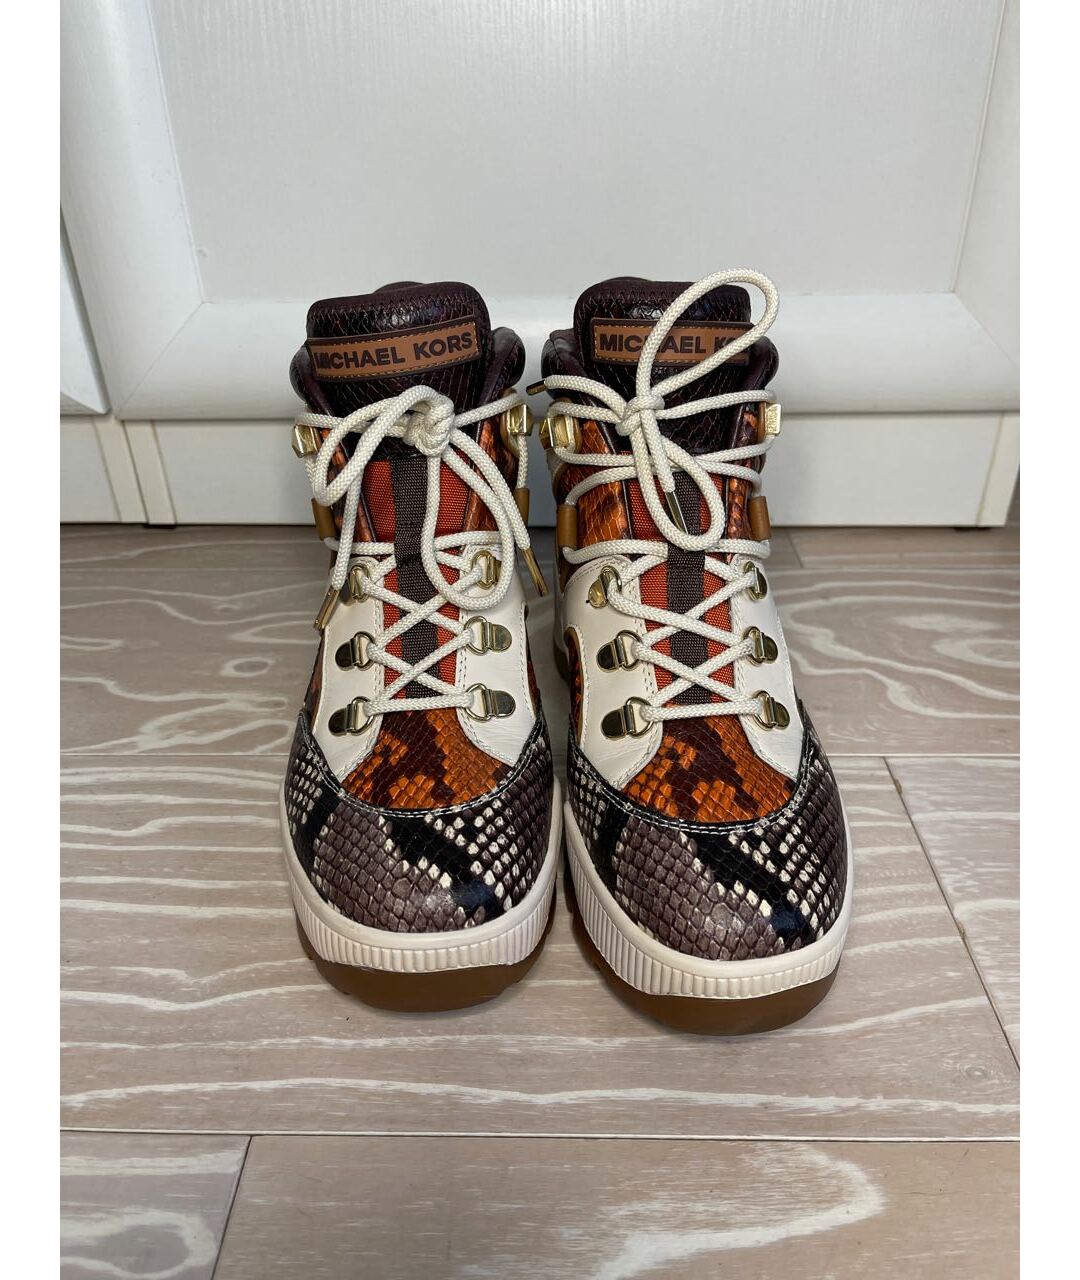 MICHAEL KORS Мульти кожаные ботинки, фото 2